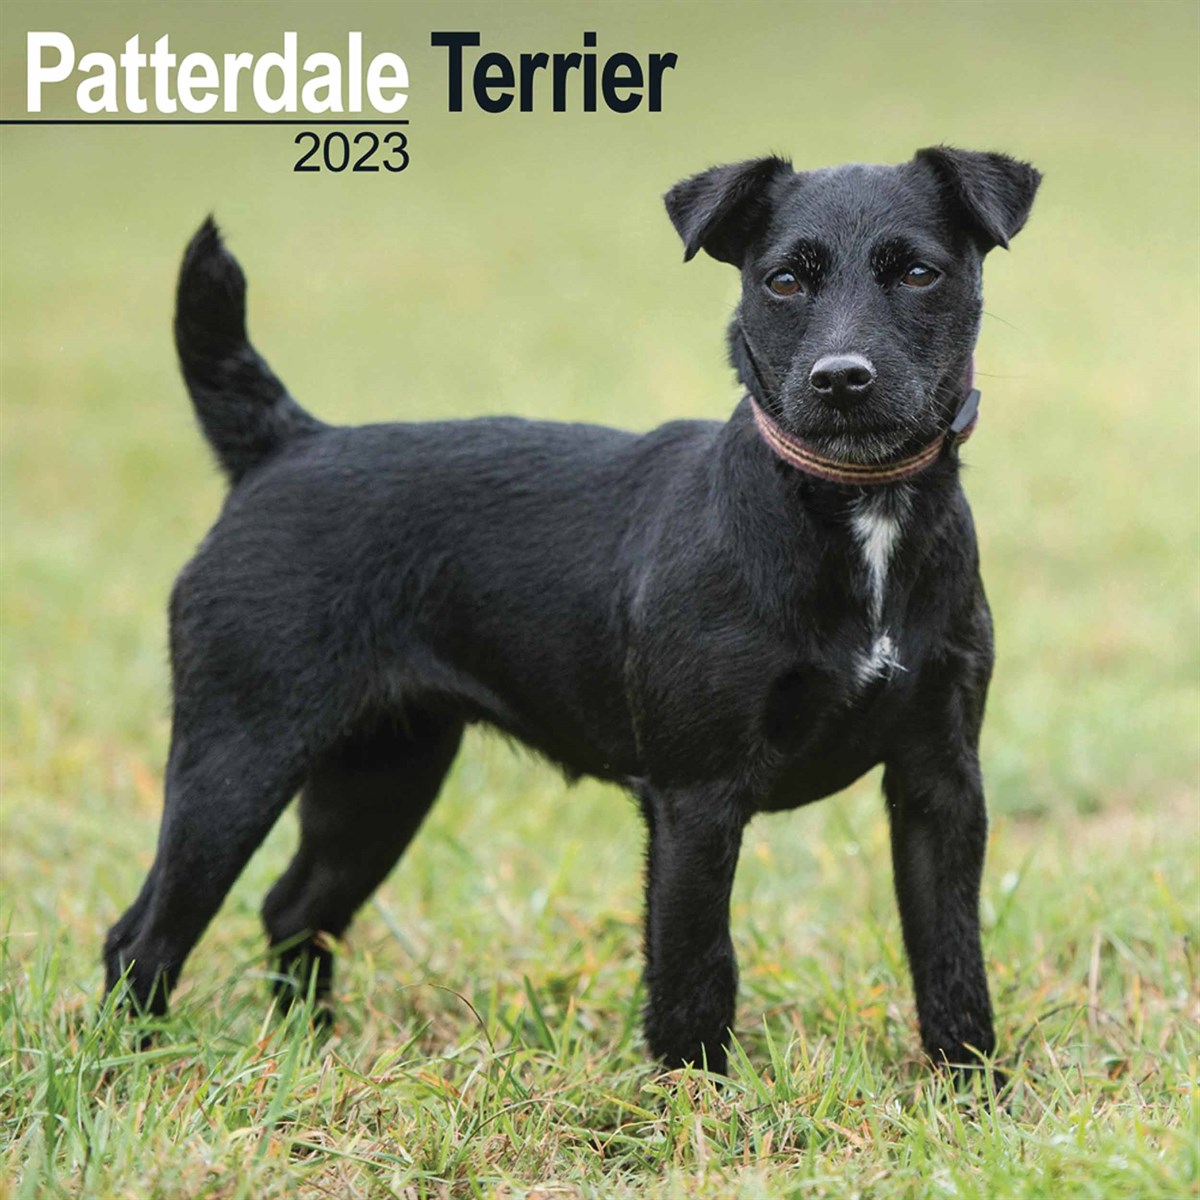 Patterdale Terriers 2023 Calendars